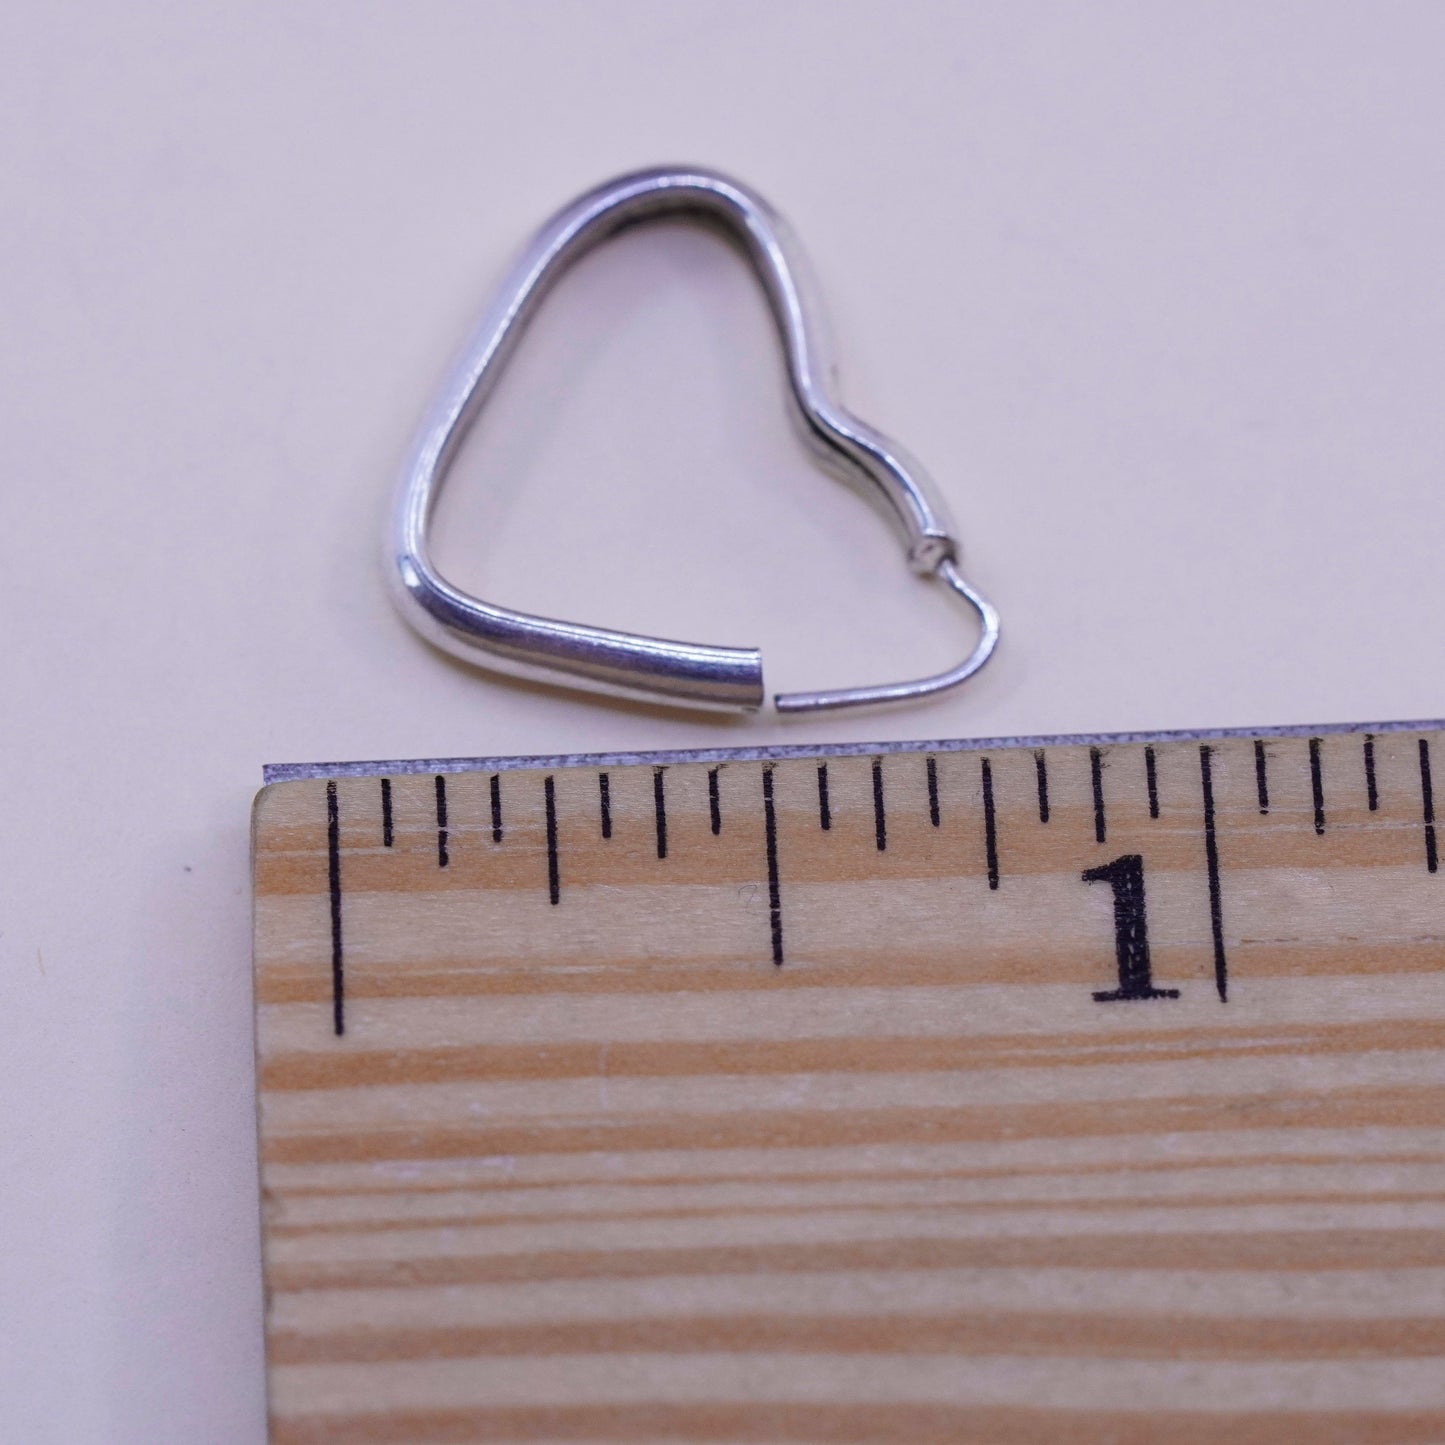 0.75”, Vintage sterling silver heart earrings, fashion minimalist, 925 hoops